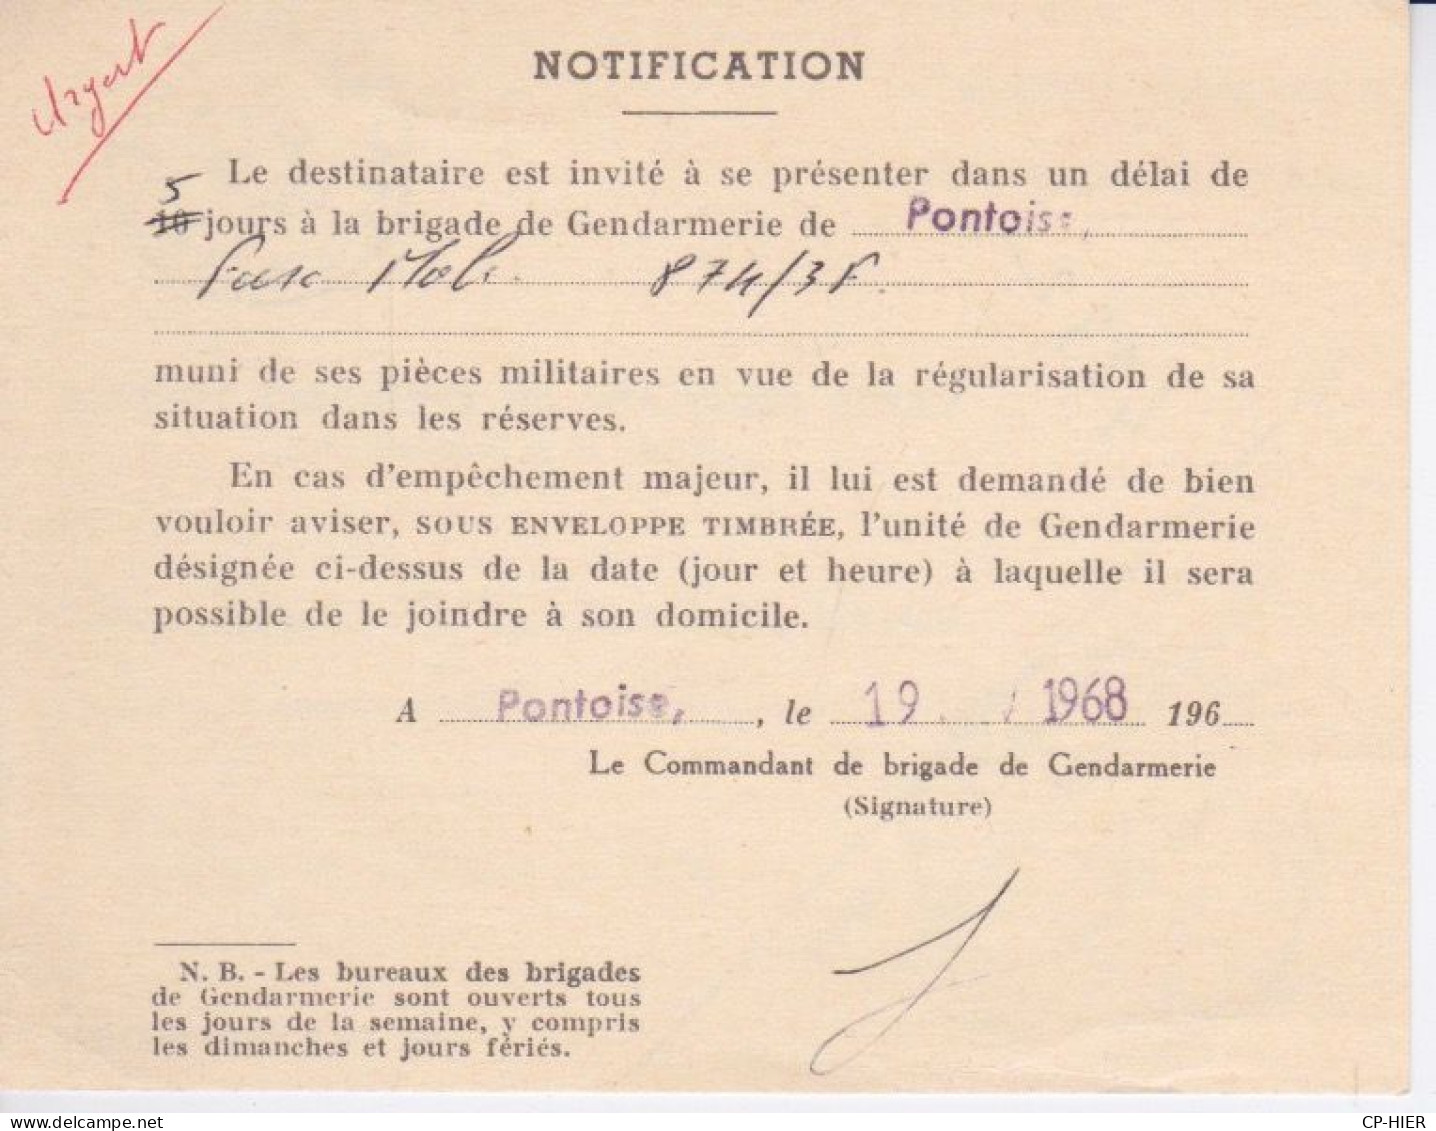 CARTE CIRCULANT EN FRANCHISE POSTALE - SERVICE MILITAIRE  - CONVOCATION A LA GENDARMERIE DE PONTOISE - Lettres & Documents